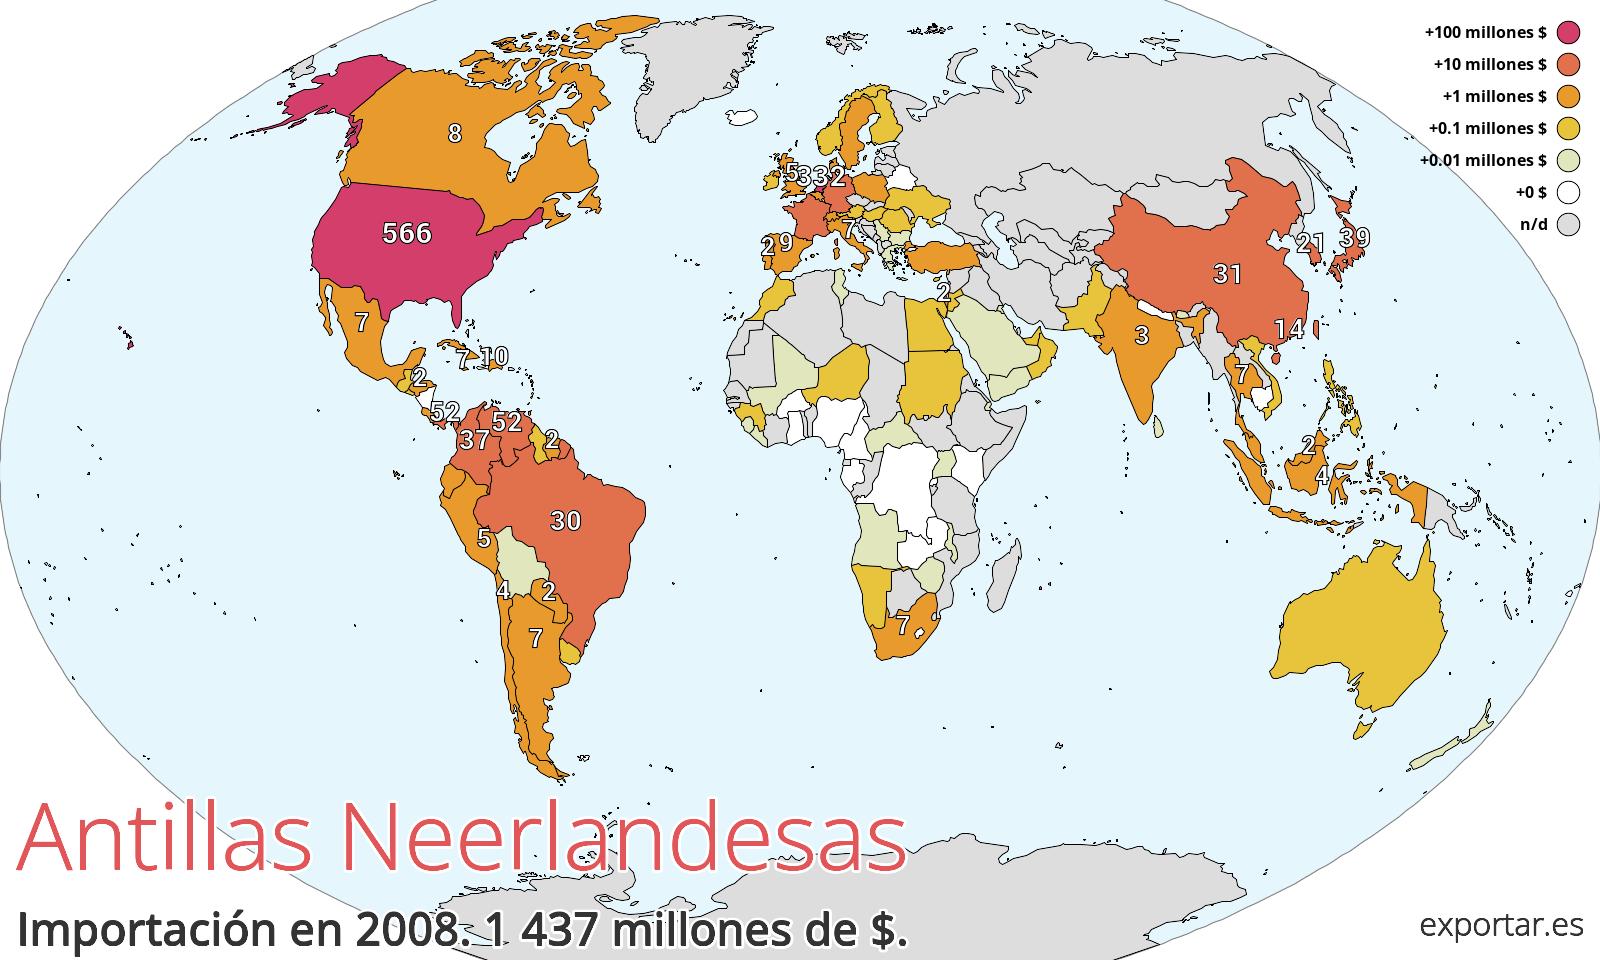 Mapa de importación de Antillas Neerlandesas en 2008.